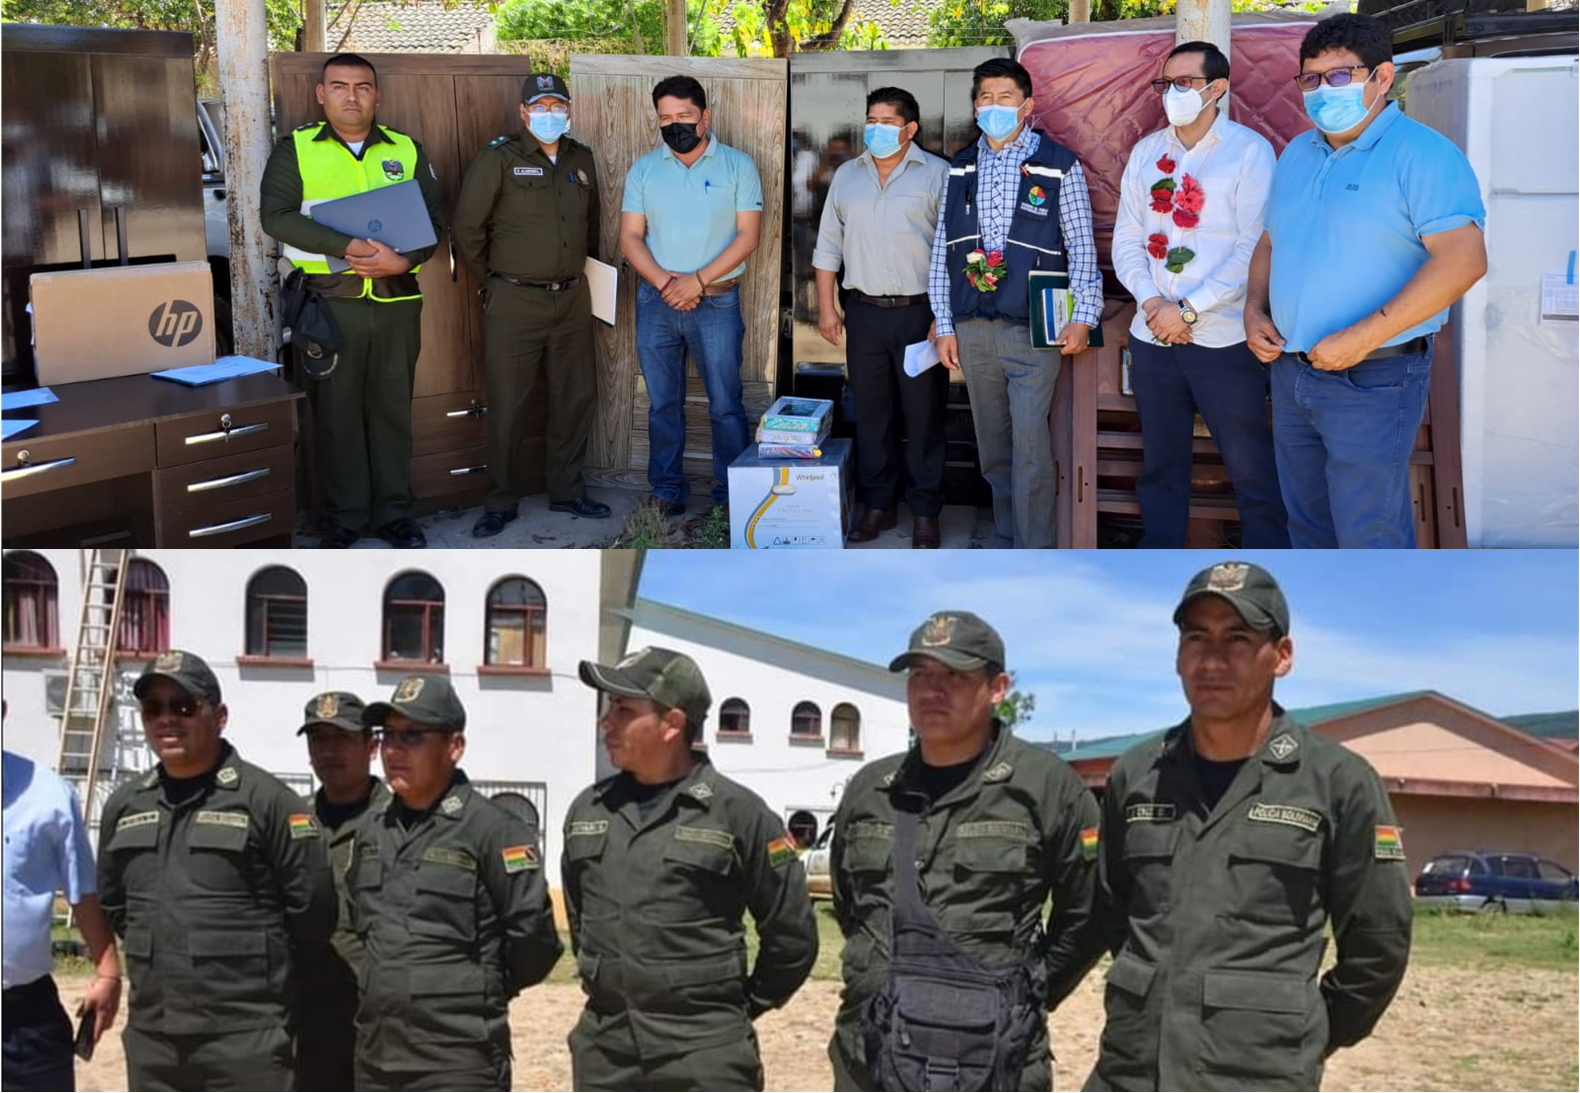 Para cumplir tareas de seguridad ciudadana, el municipio de Monteagudo cuenta con seis nuevos efectivos policiales